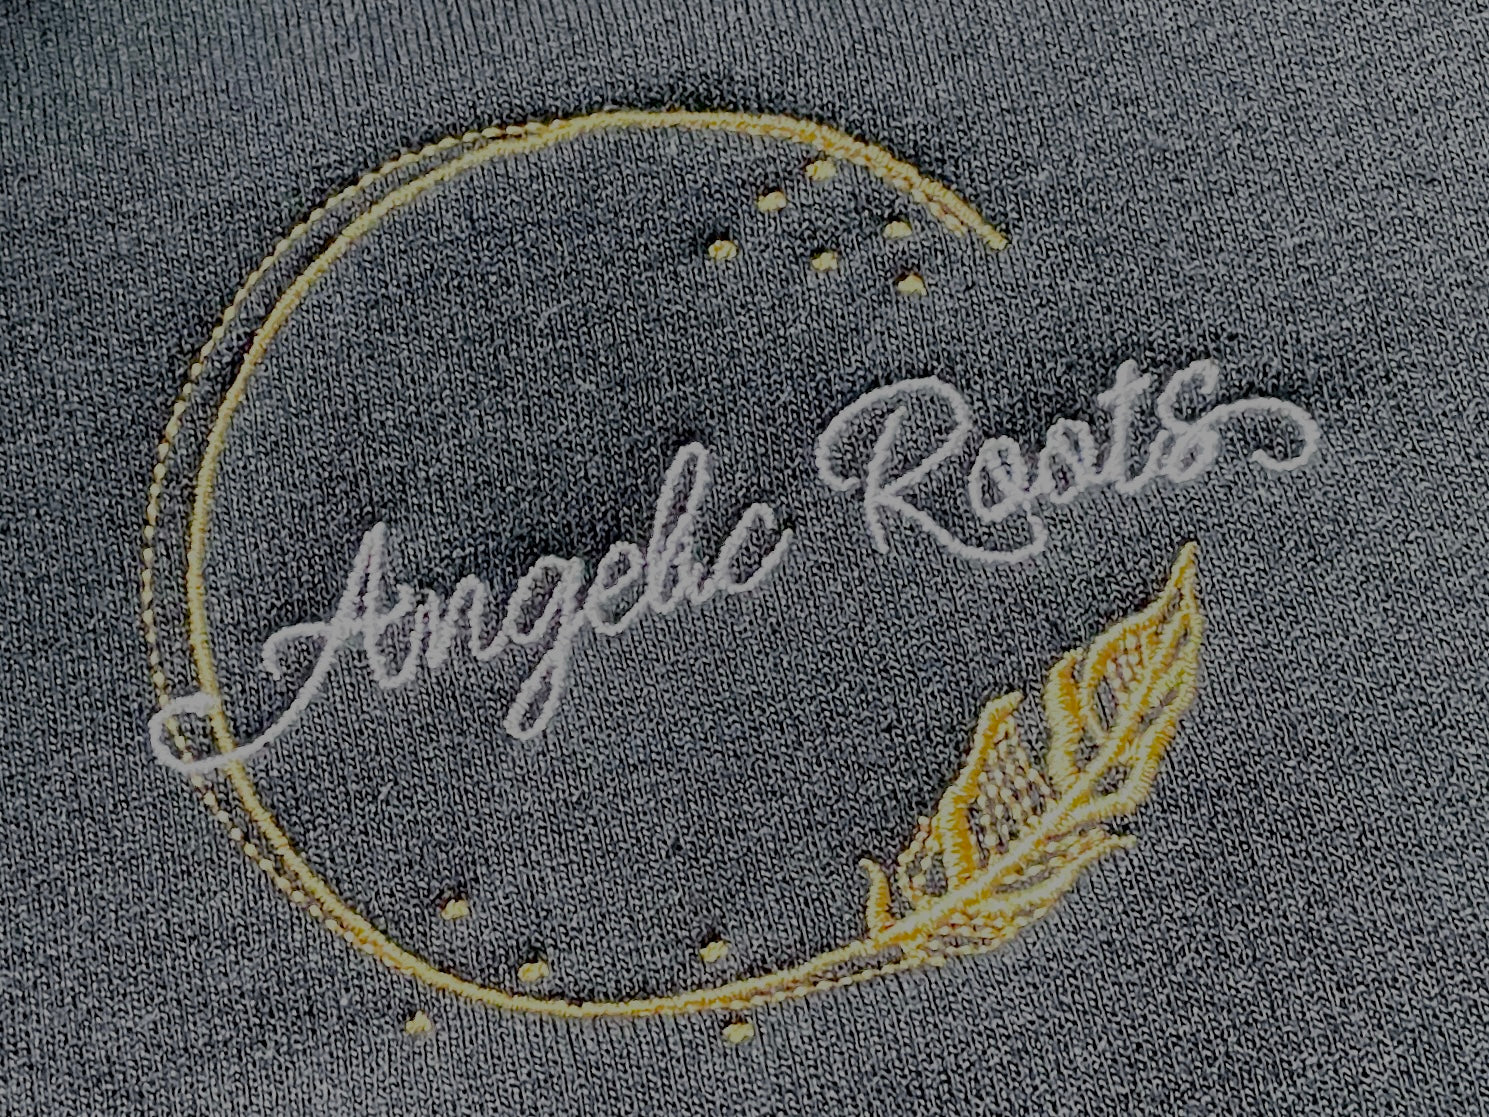 Angelic Roots Crewneck Sweatshirt